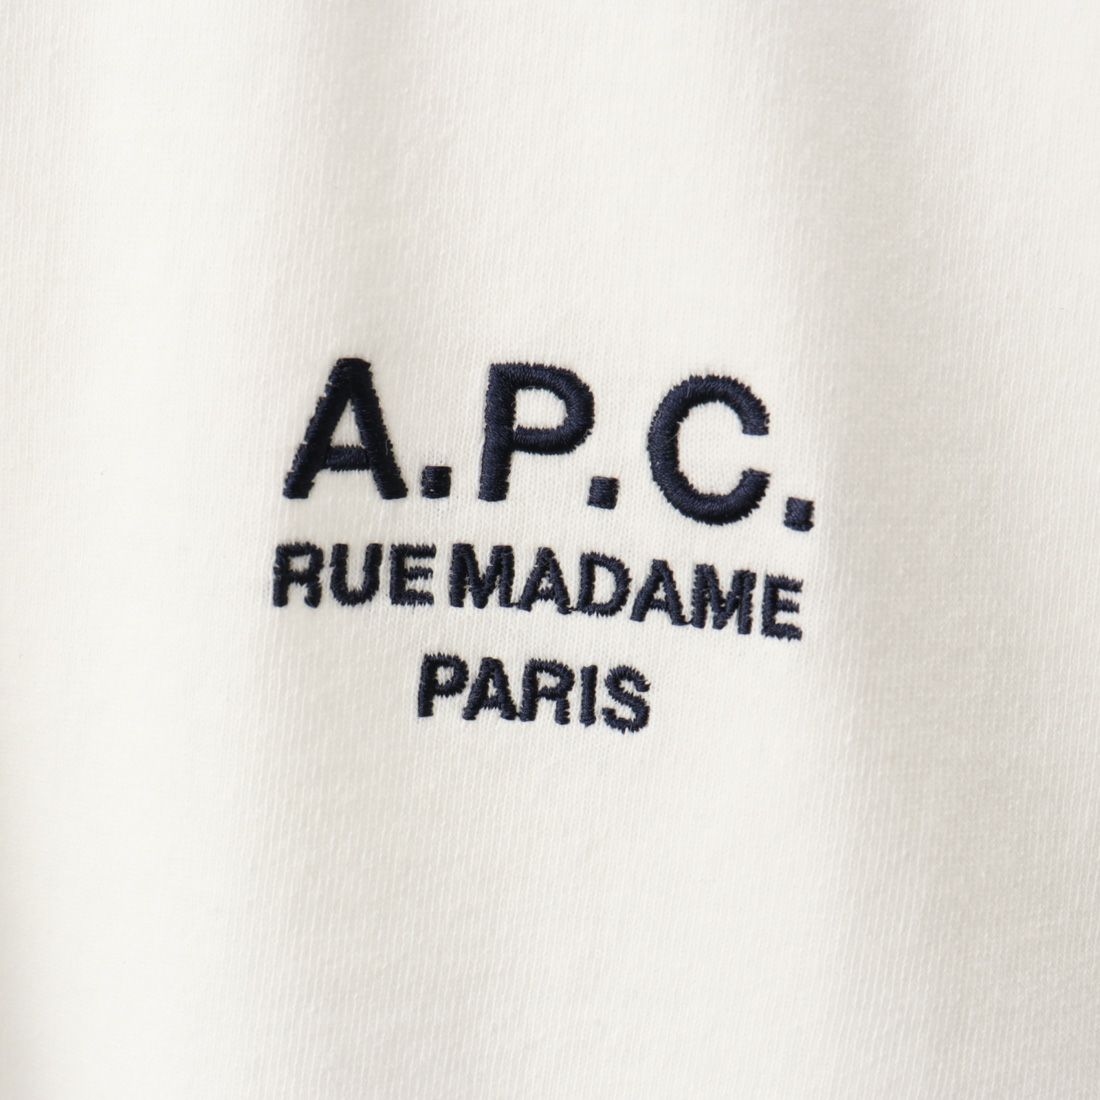 A.P.C. [アー・ペー・セー] RAYMOND Tシャツ [T-SHIRT-RAYMOND] 90 BLANC